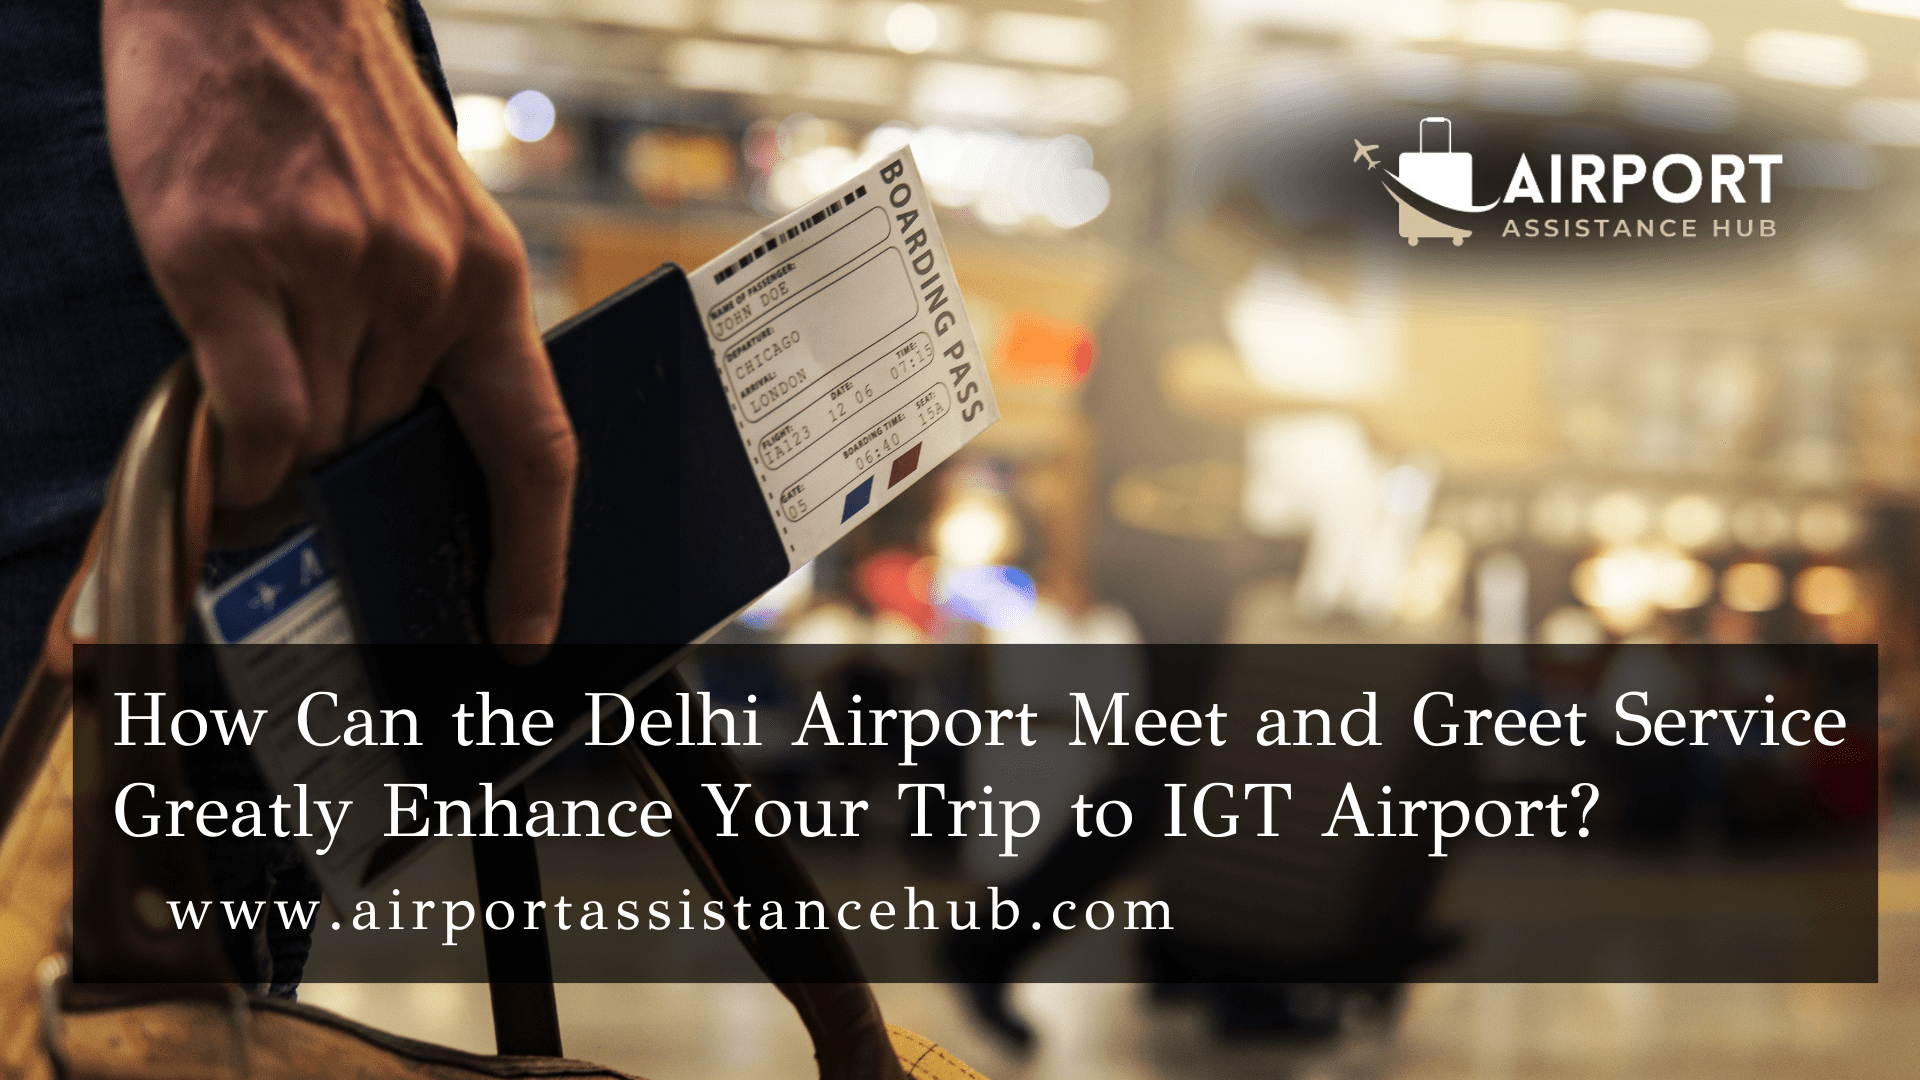 Delhi Airport Meet and Greet